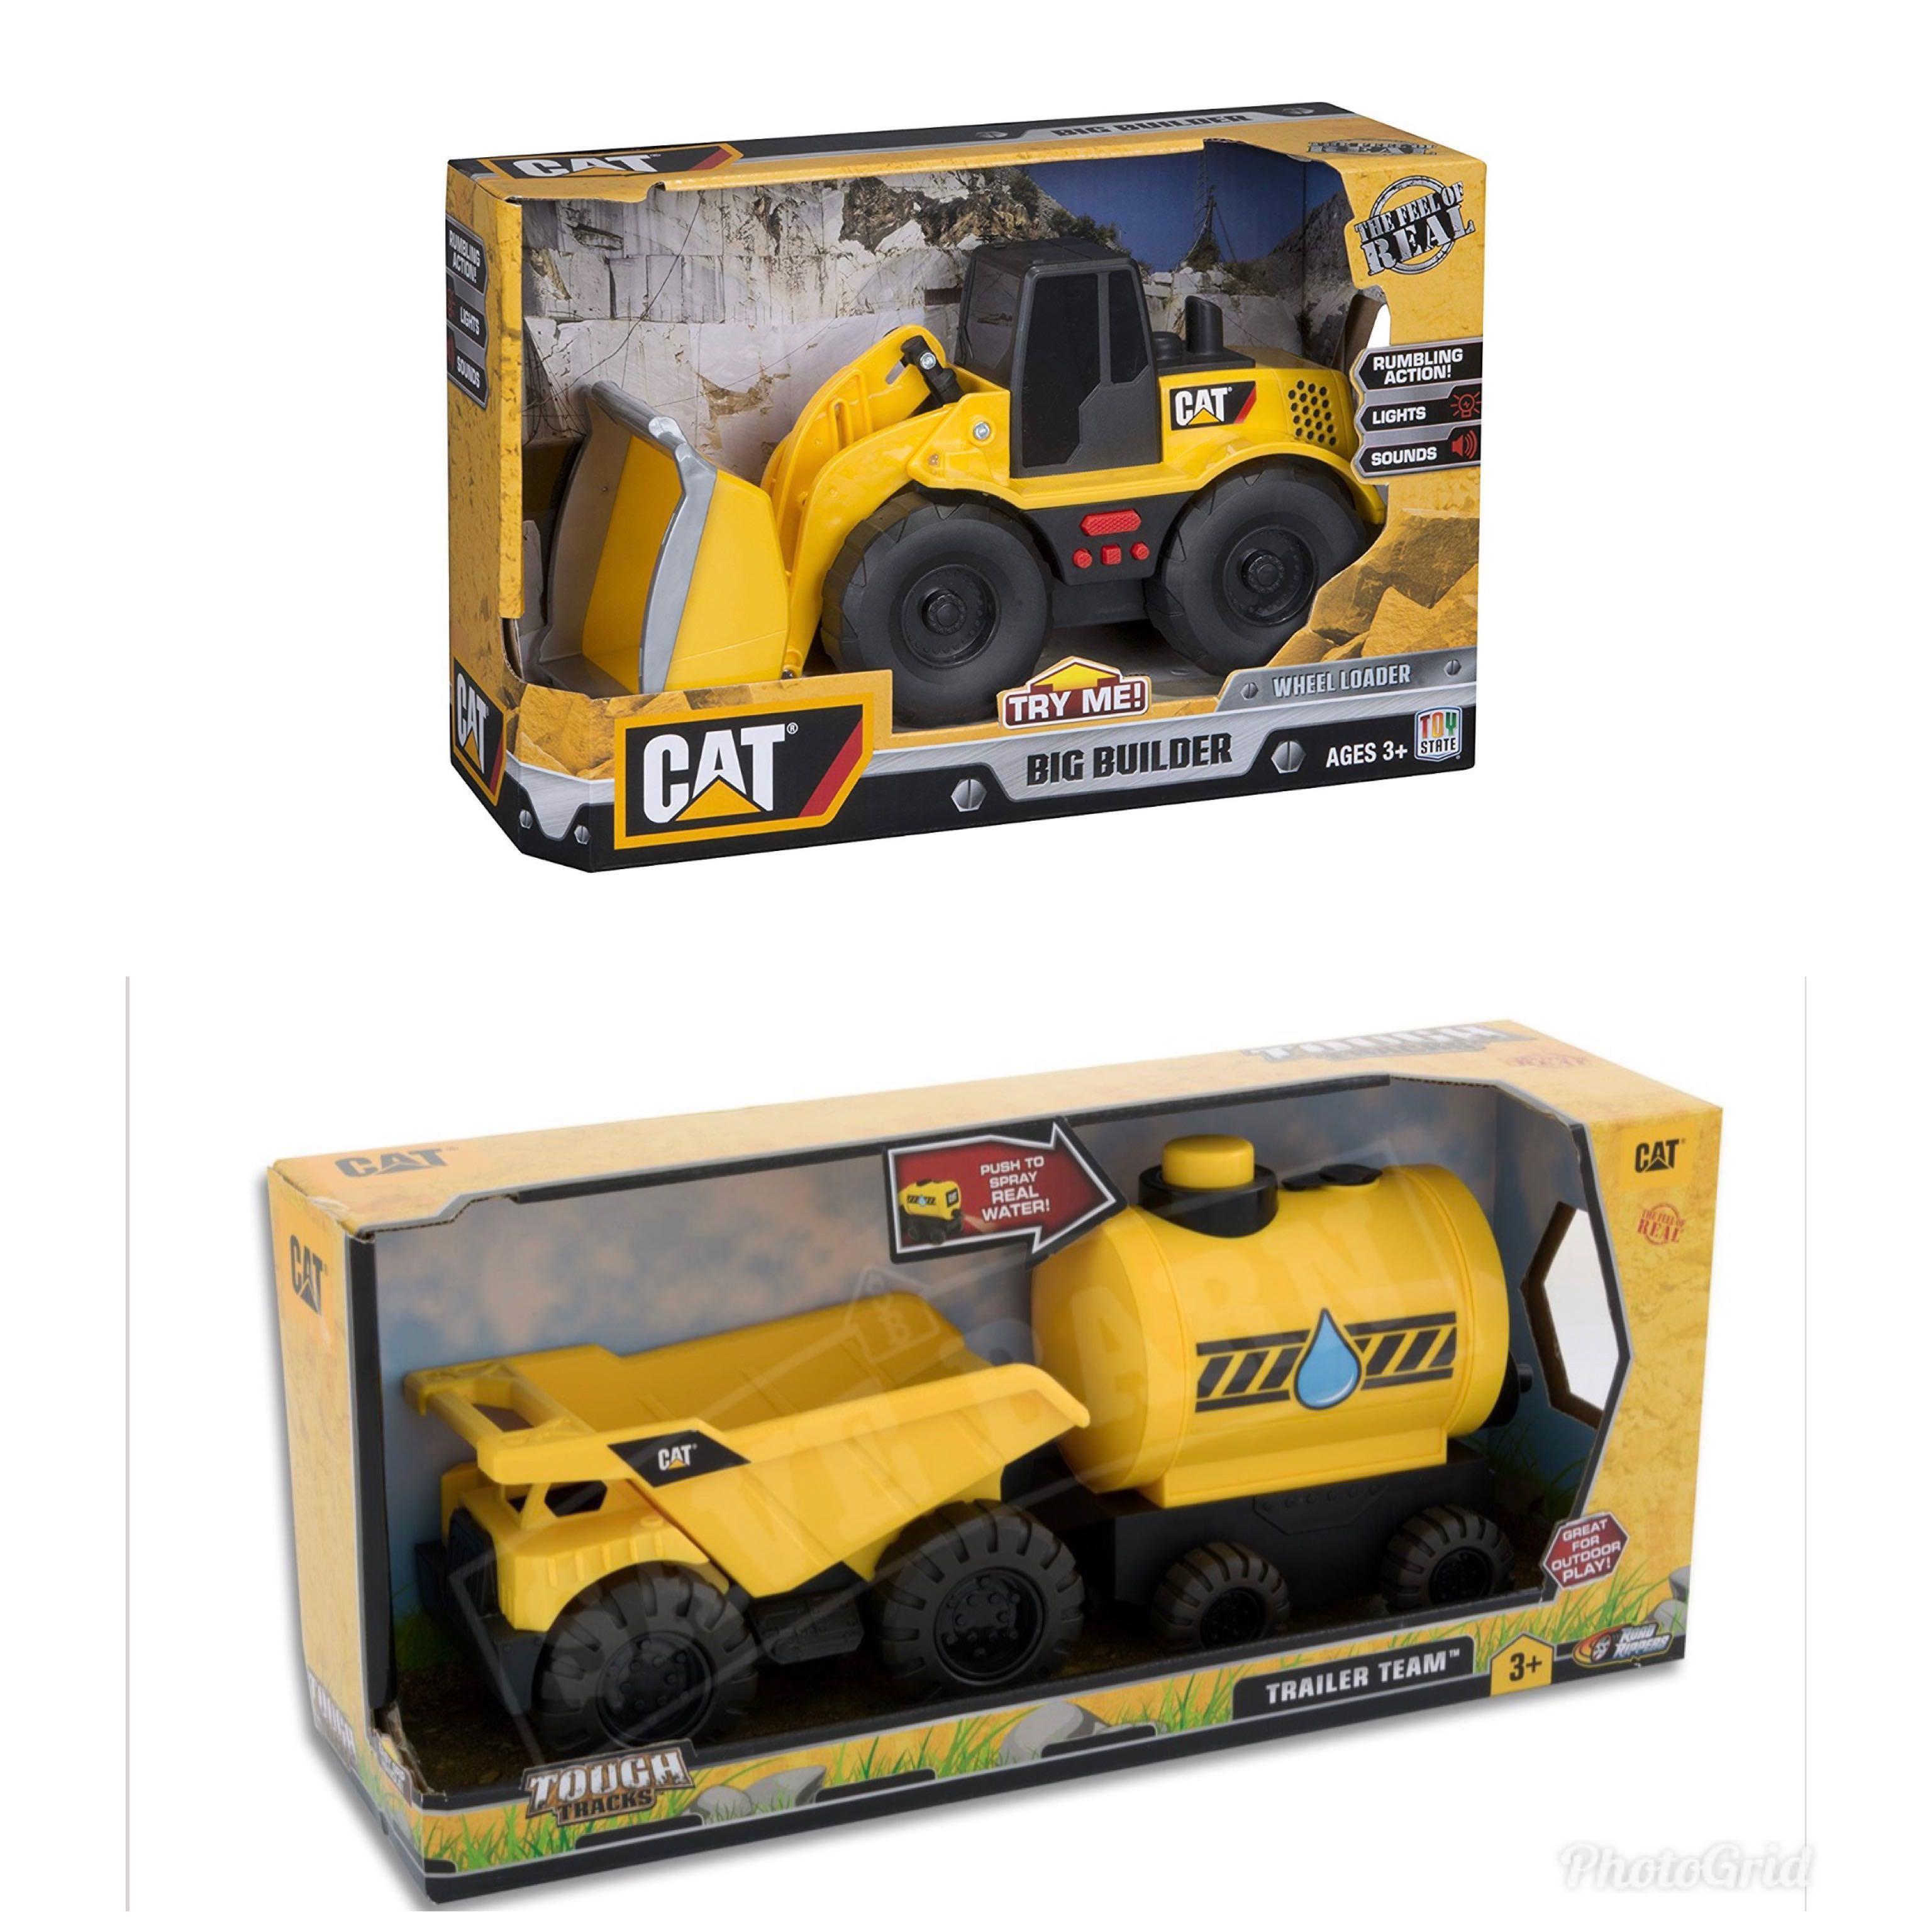 caterpillar kids toys